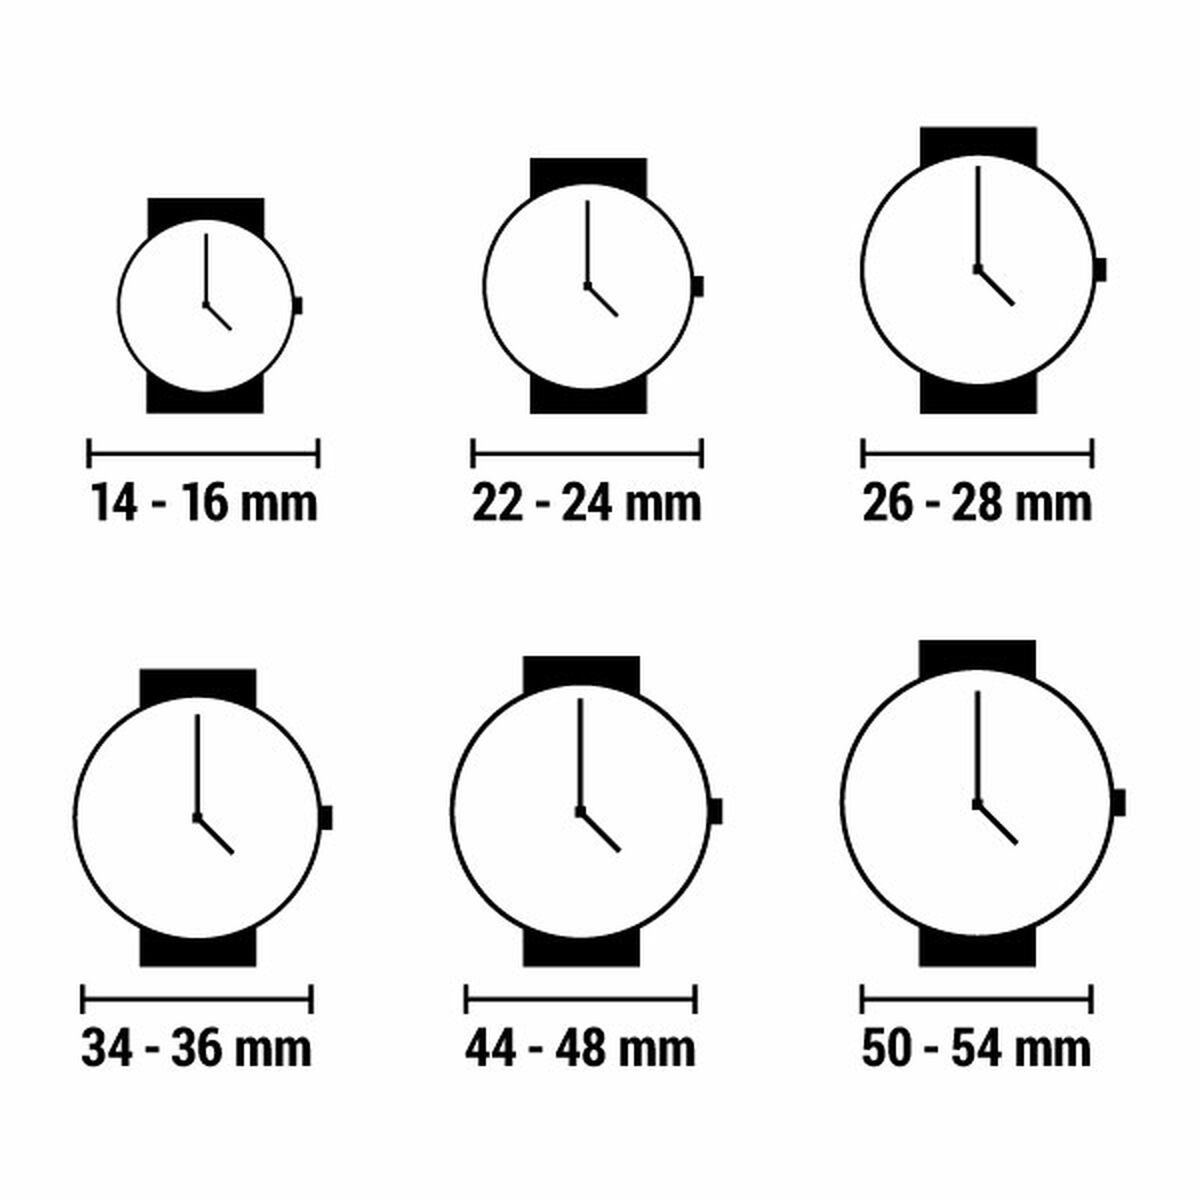 Horloge Dames Esprit ES1L284L0115